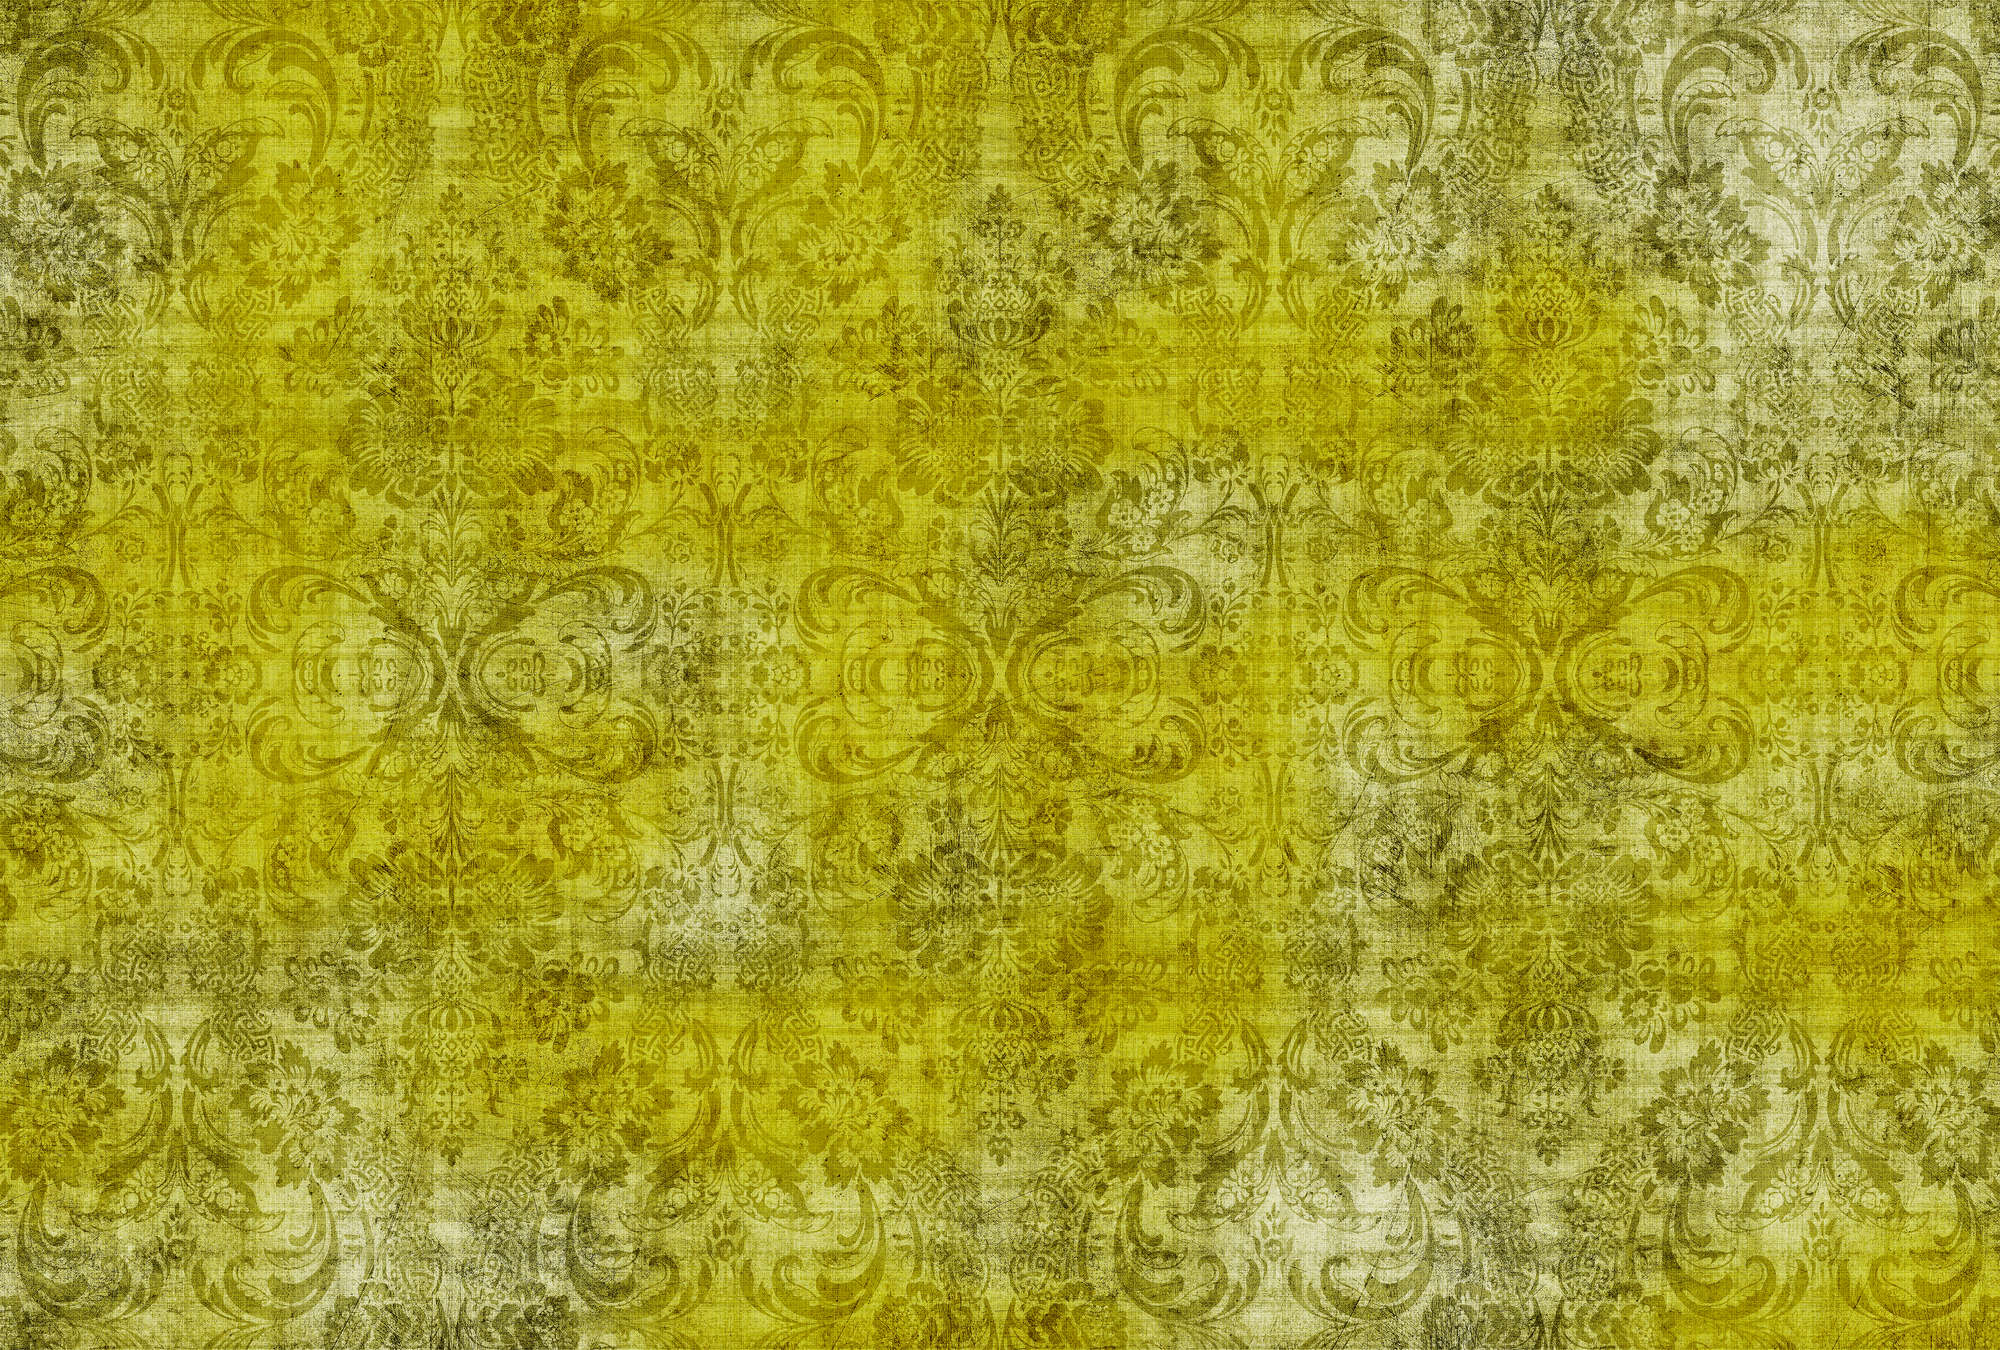             Damasco antiguo 1 - Ornamentos sobre papel pintado fotomural moteado de amarillo en estructura de lino natural - Amarillo | nácar liso no tejido
        